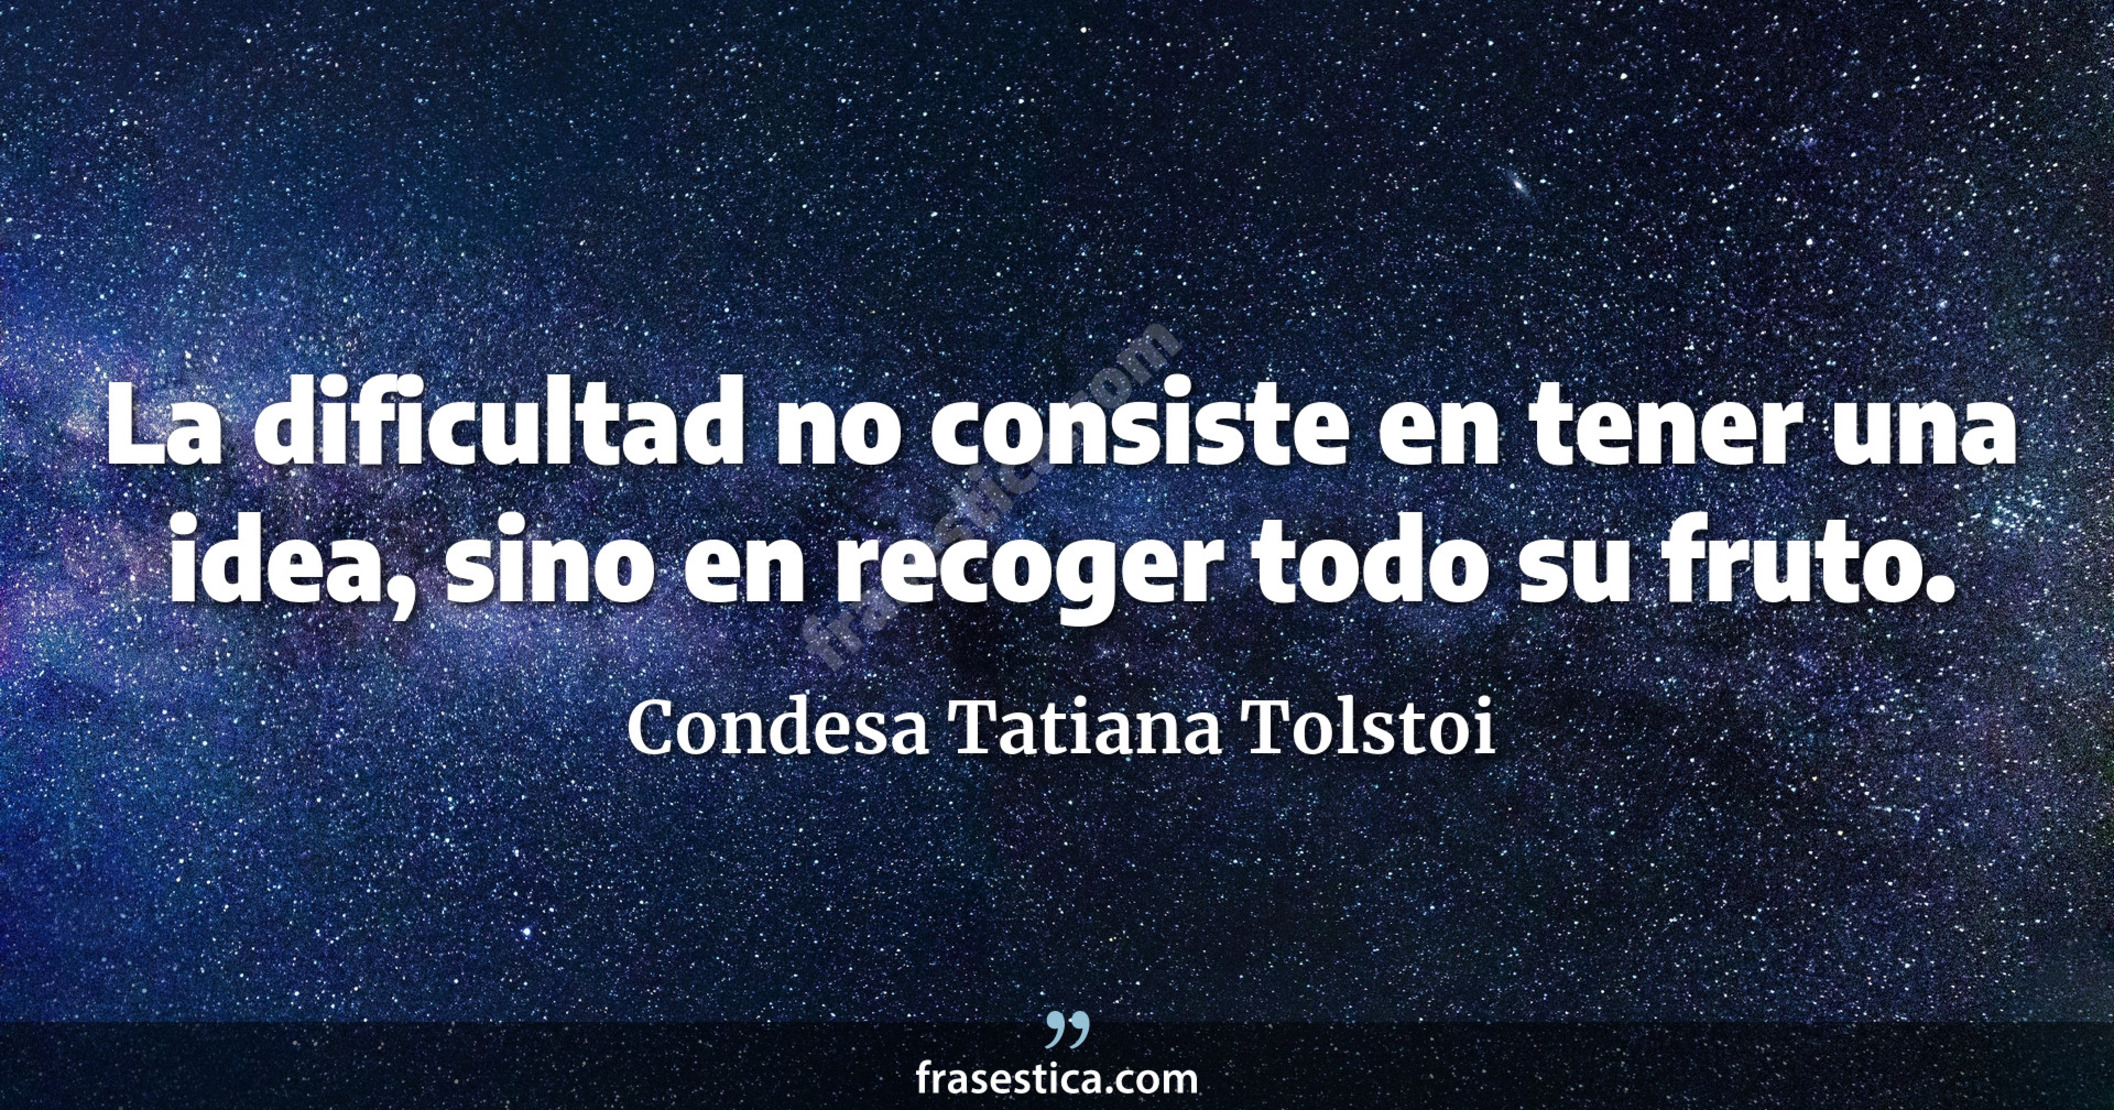 La dificultad no consiste en tener una idea, sino en recoger todo su fruto. - Condesa Tatiana Tolstoi